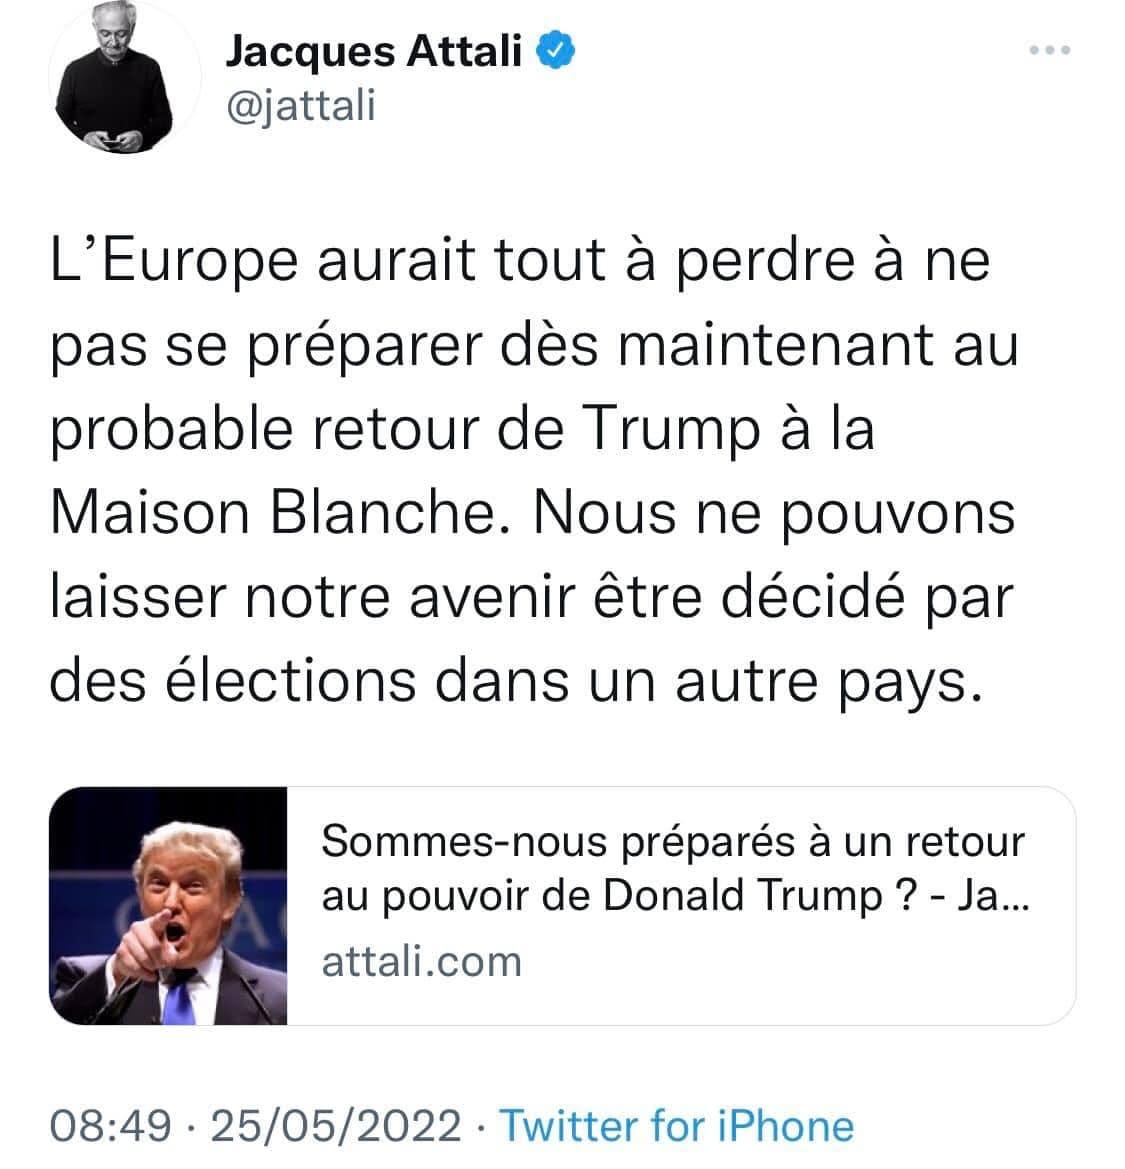 Peut être une capture d’écran de Twitter de 2 personnes et texte qui dit ’Jacques Attali @jattali L'Europe aurait tout à perdre à ne pas se préparer dès maintenant au probable retour de Trump à la Maison Blanche. Nous ne pouvons laisser notre avenir être décidé par des élections dans un autre pays. Sommes-nous préparés à un retour au pouvoir de Donald Trump -Ja... attali.com 08:49・25/05/2022・ 08:49· Twitter for iPhone’